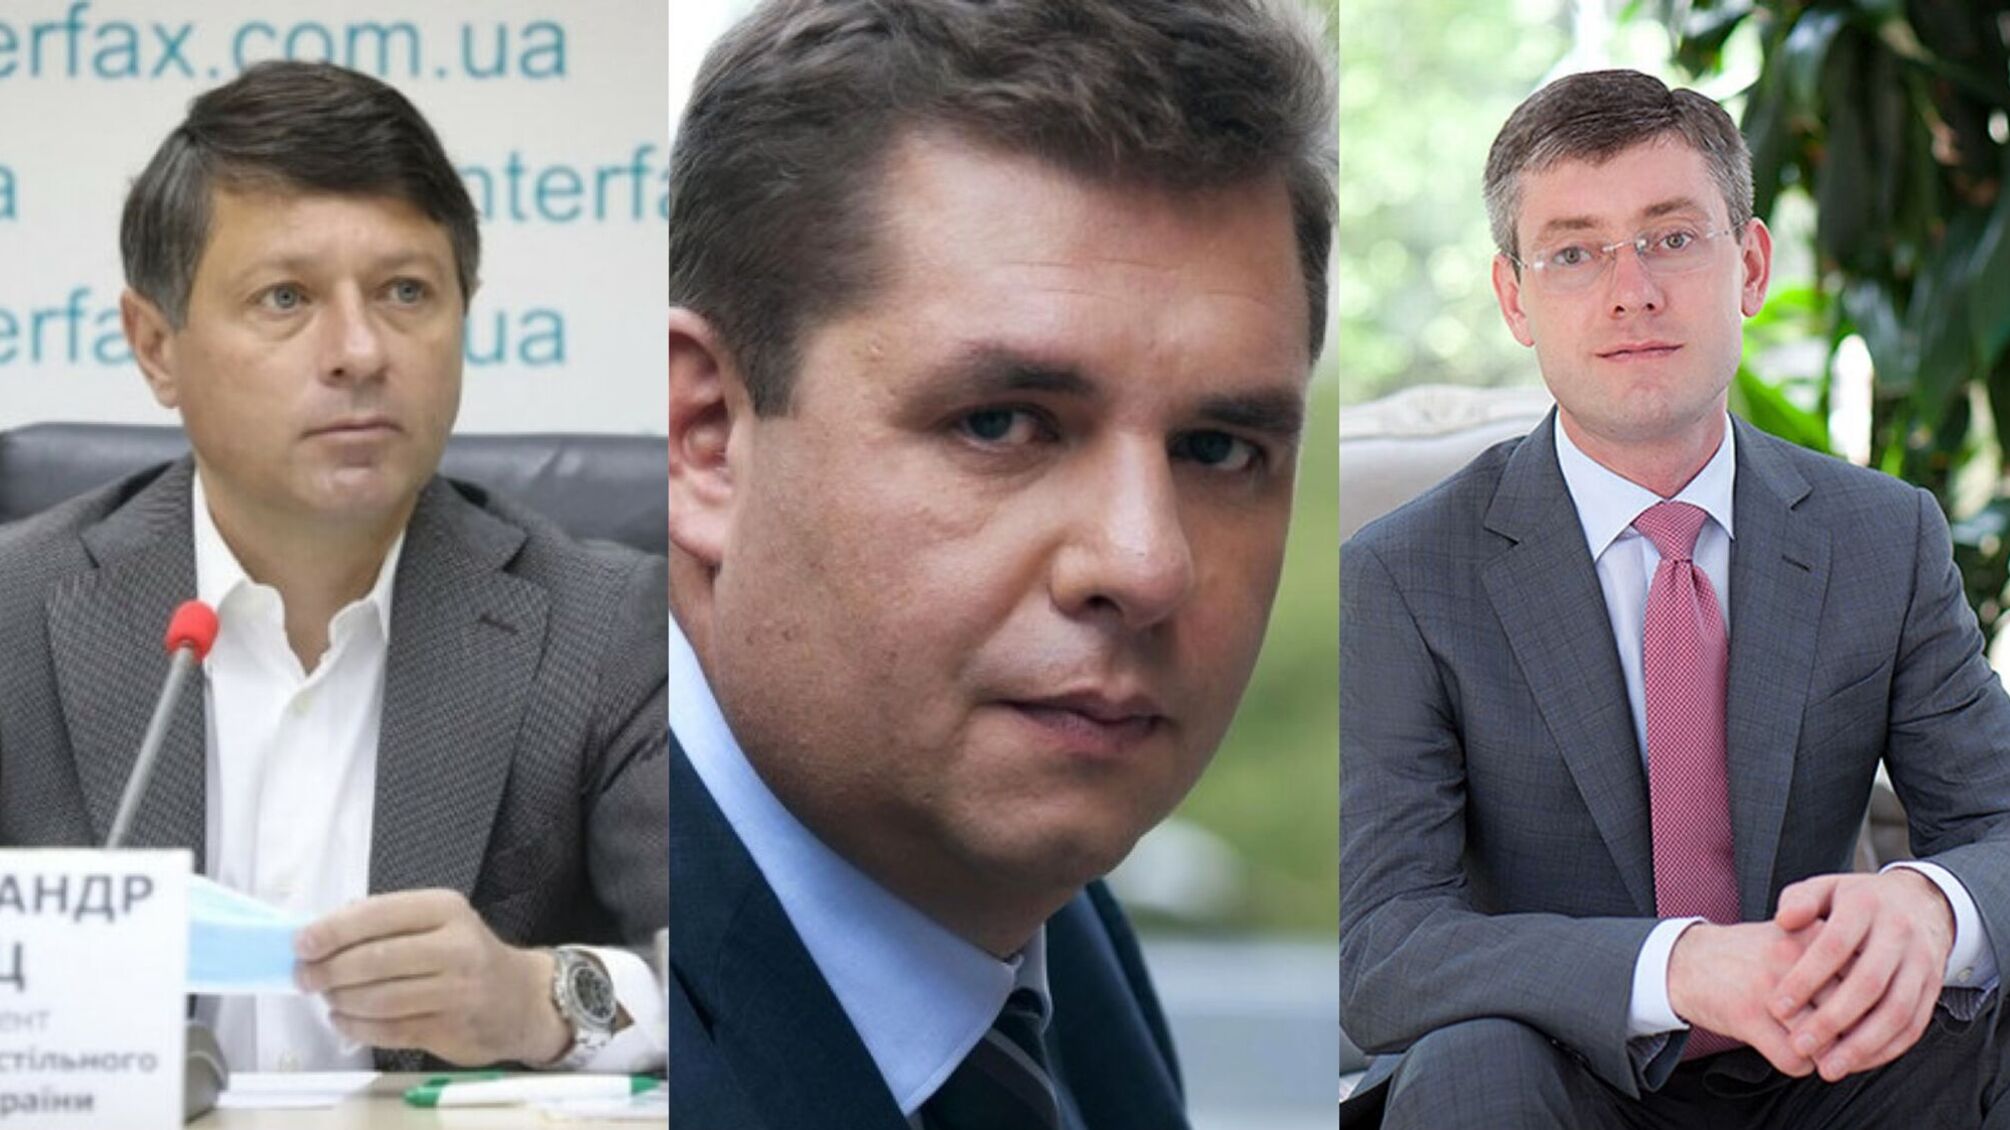 Три экс-депутата Верховной Рады пересекли границу под видом волонтеров и не вернулись в Украину